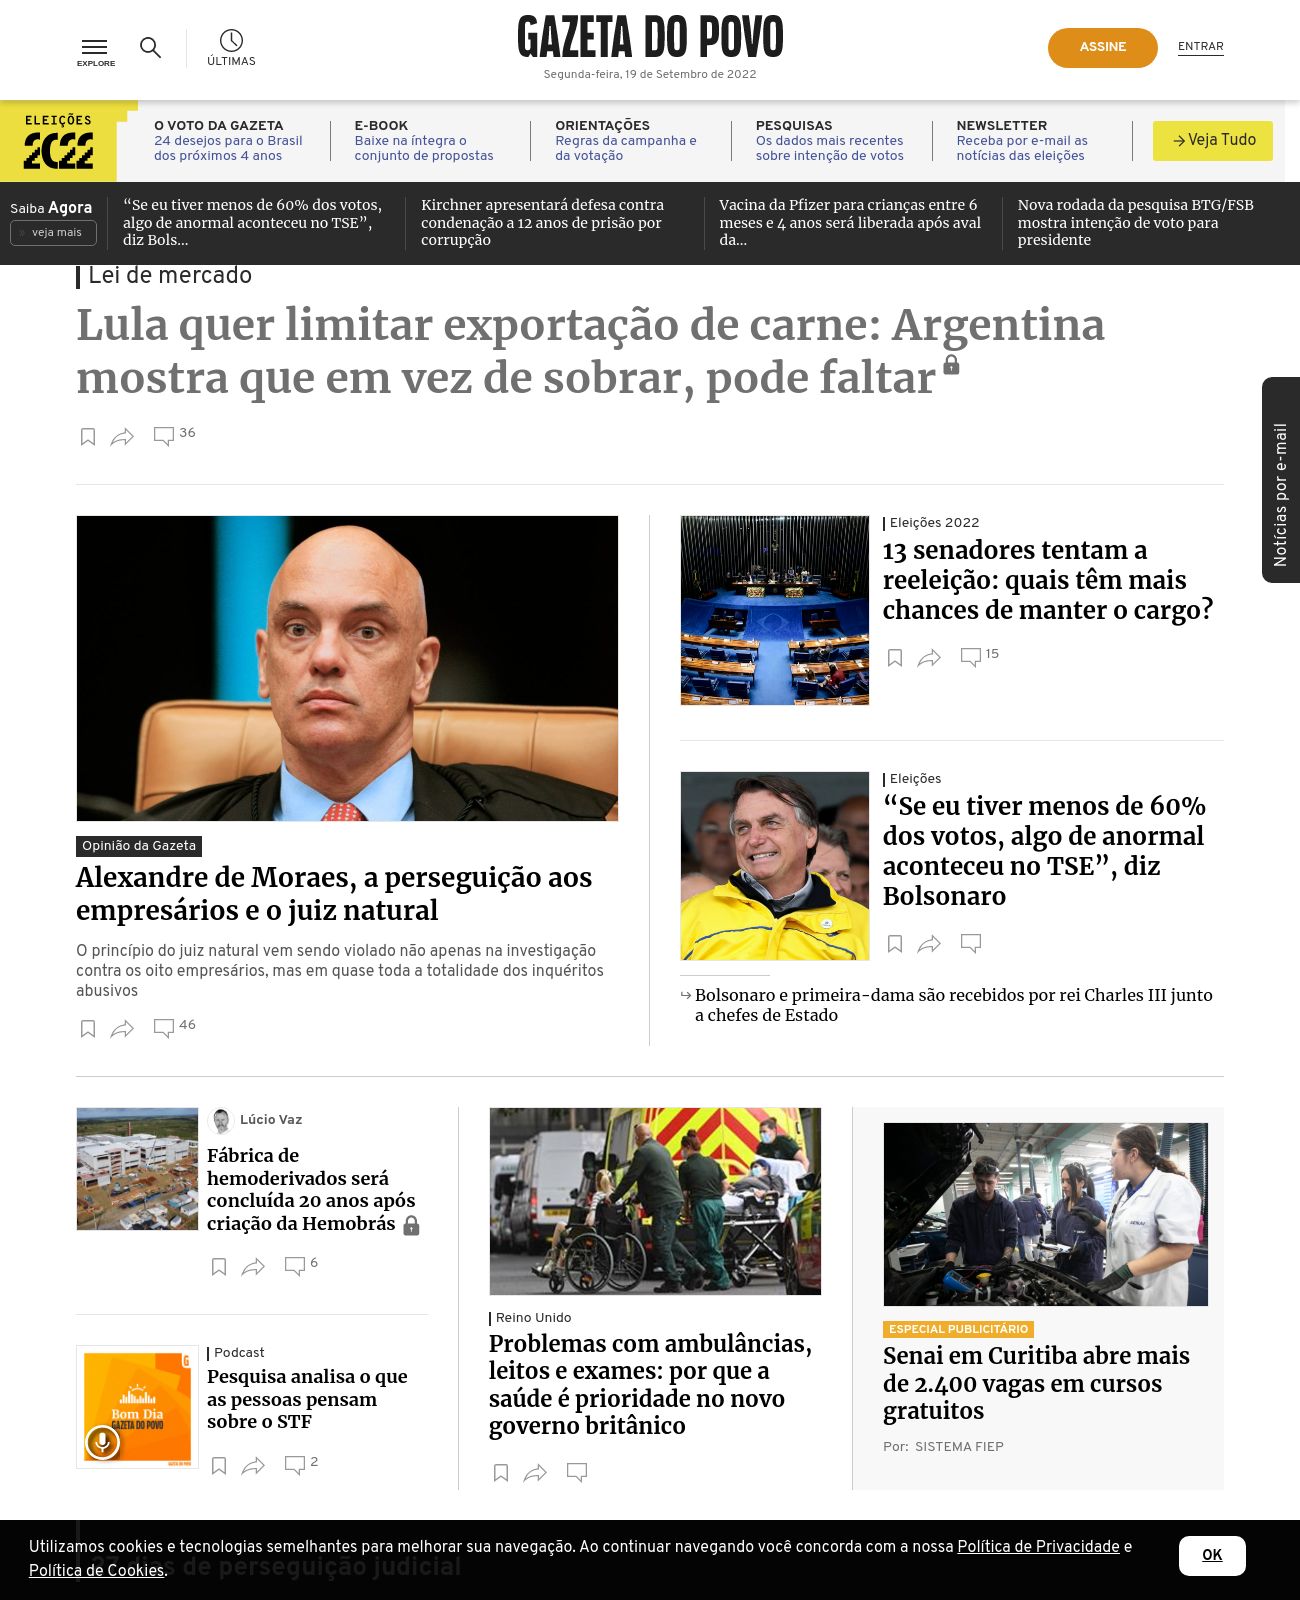 Gazeta do Povo at 2022-09-19 09:01:47-03:00 local time